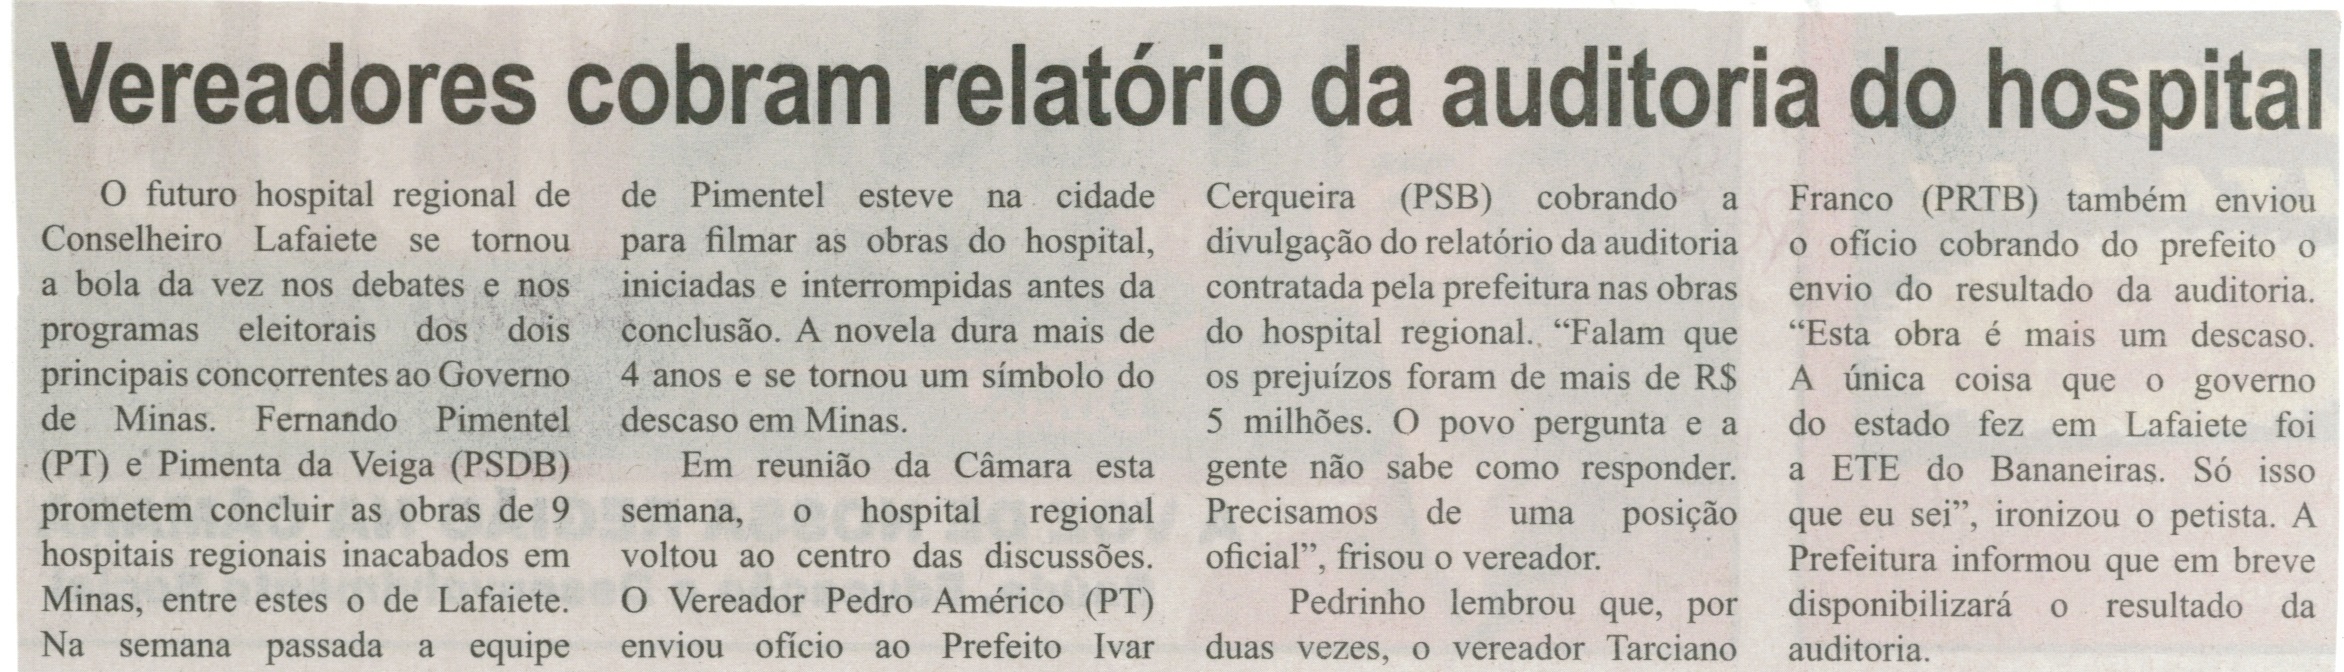 Vereadores cobram relatório da auditoria do hospital. Correio de Minas, Conselheiro Lafaiete, 27 set. 2014, p. 2.